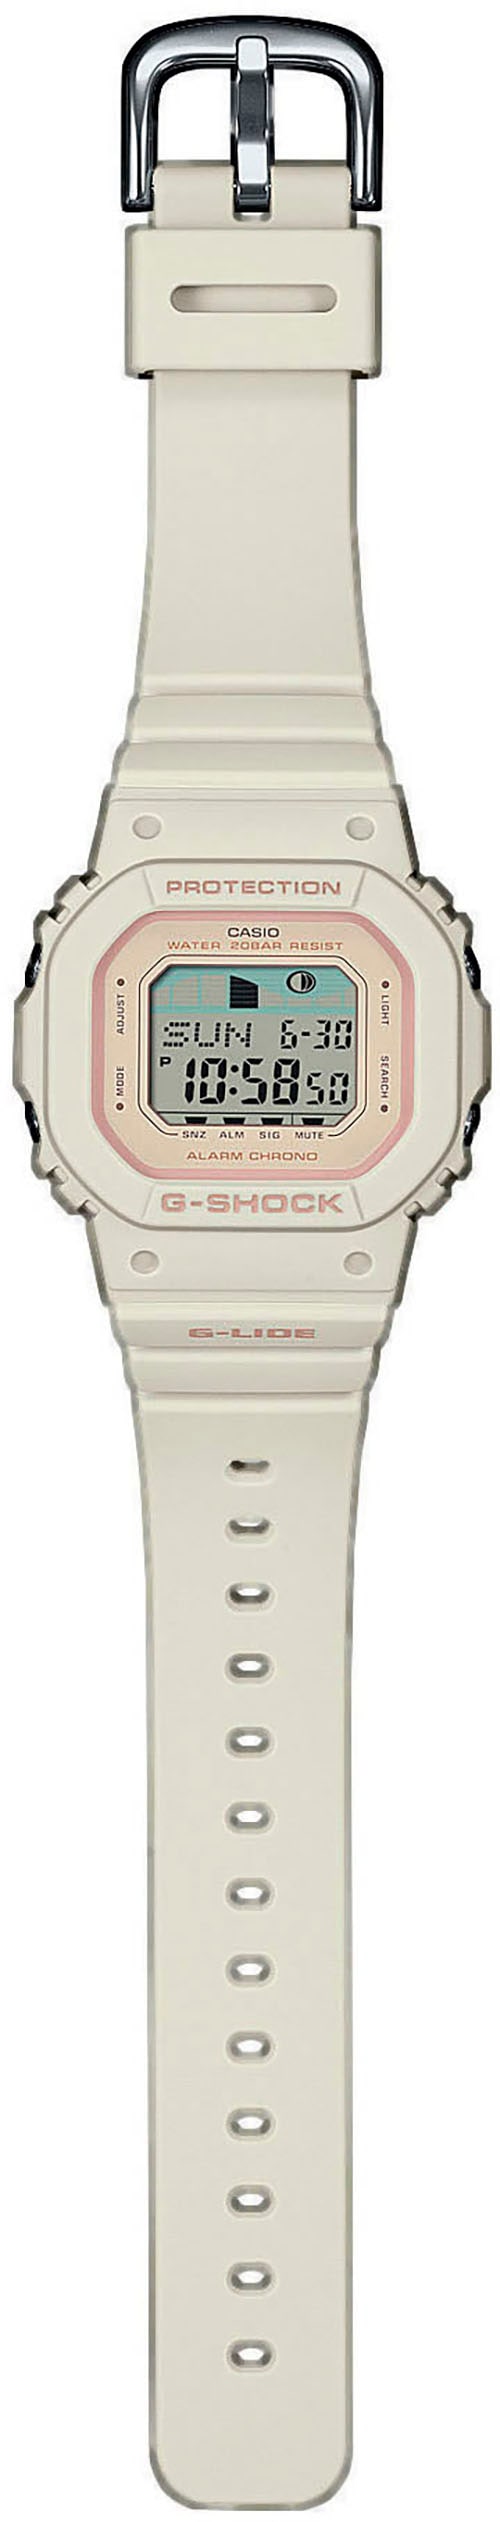 CASIO G-SHOCK Chronograph »GLX-S5600-7ER«, Quarzuhr, Armbanduhr, Damen, Herren, digital, bis 20 bar wasserdicht